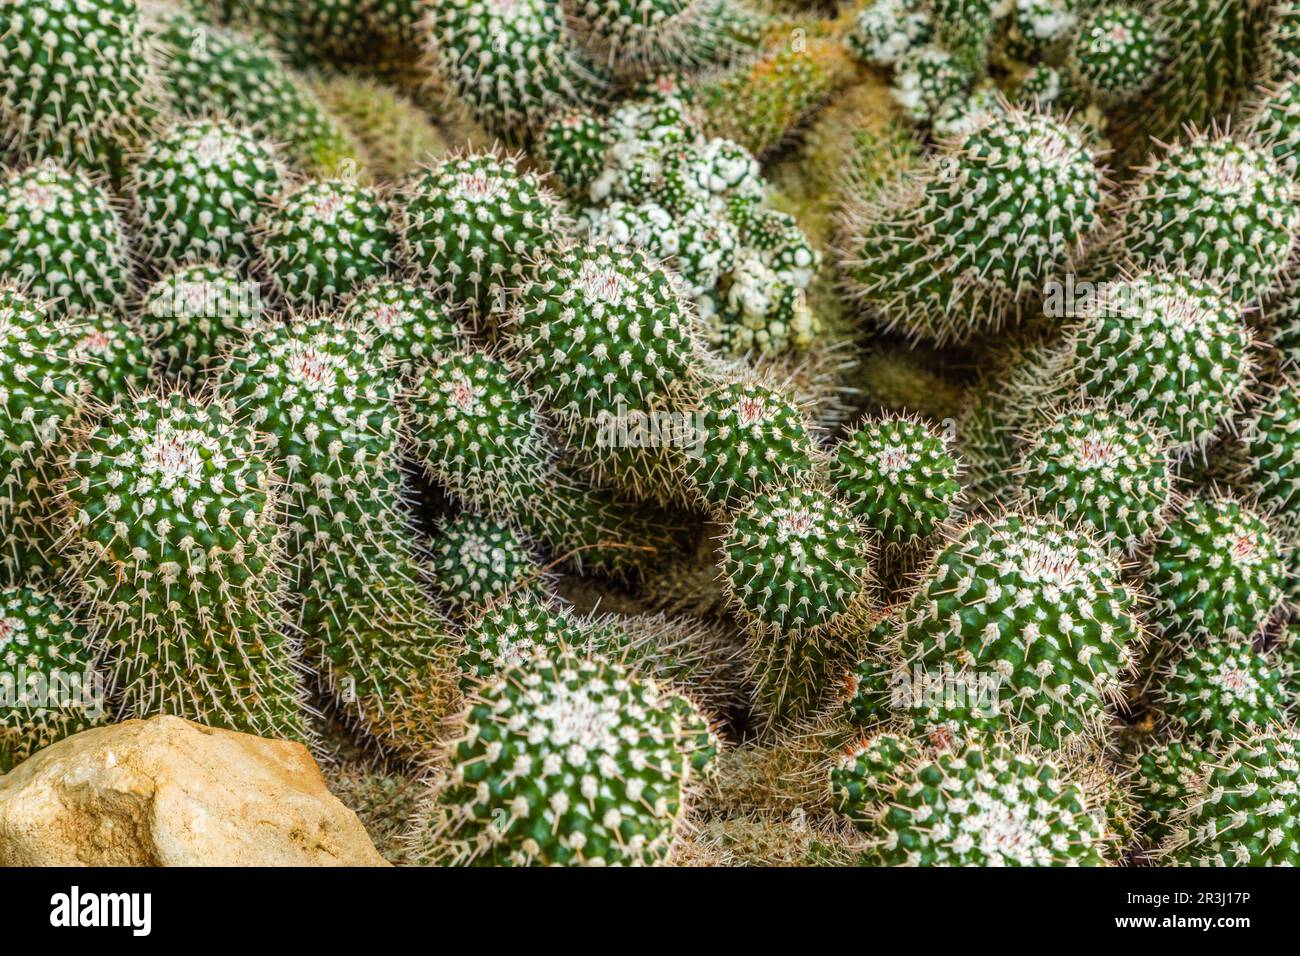 Worm green cactus Stock Photo